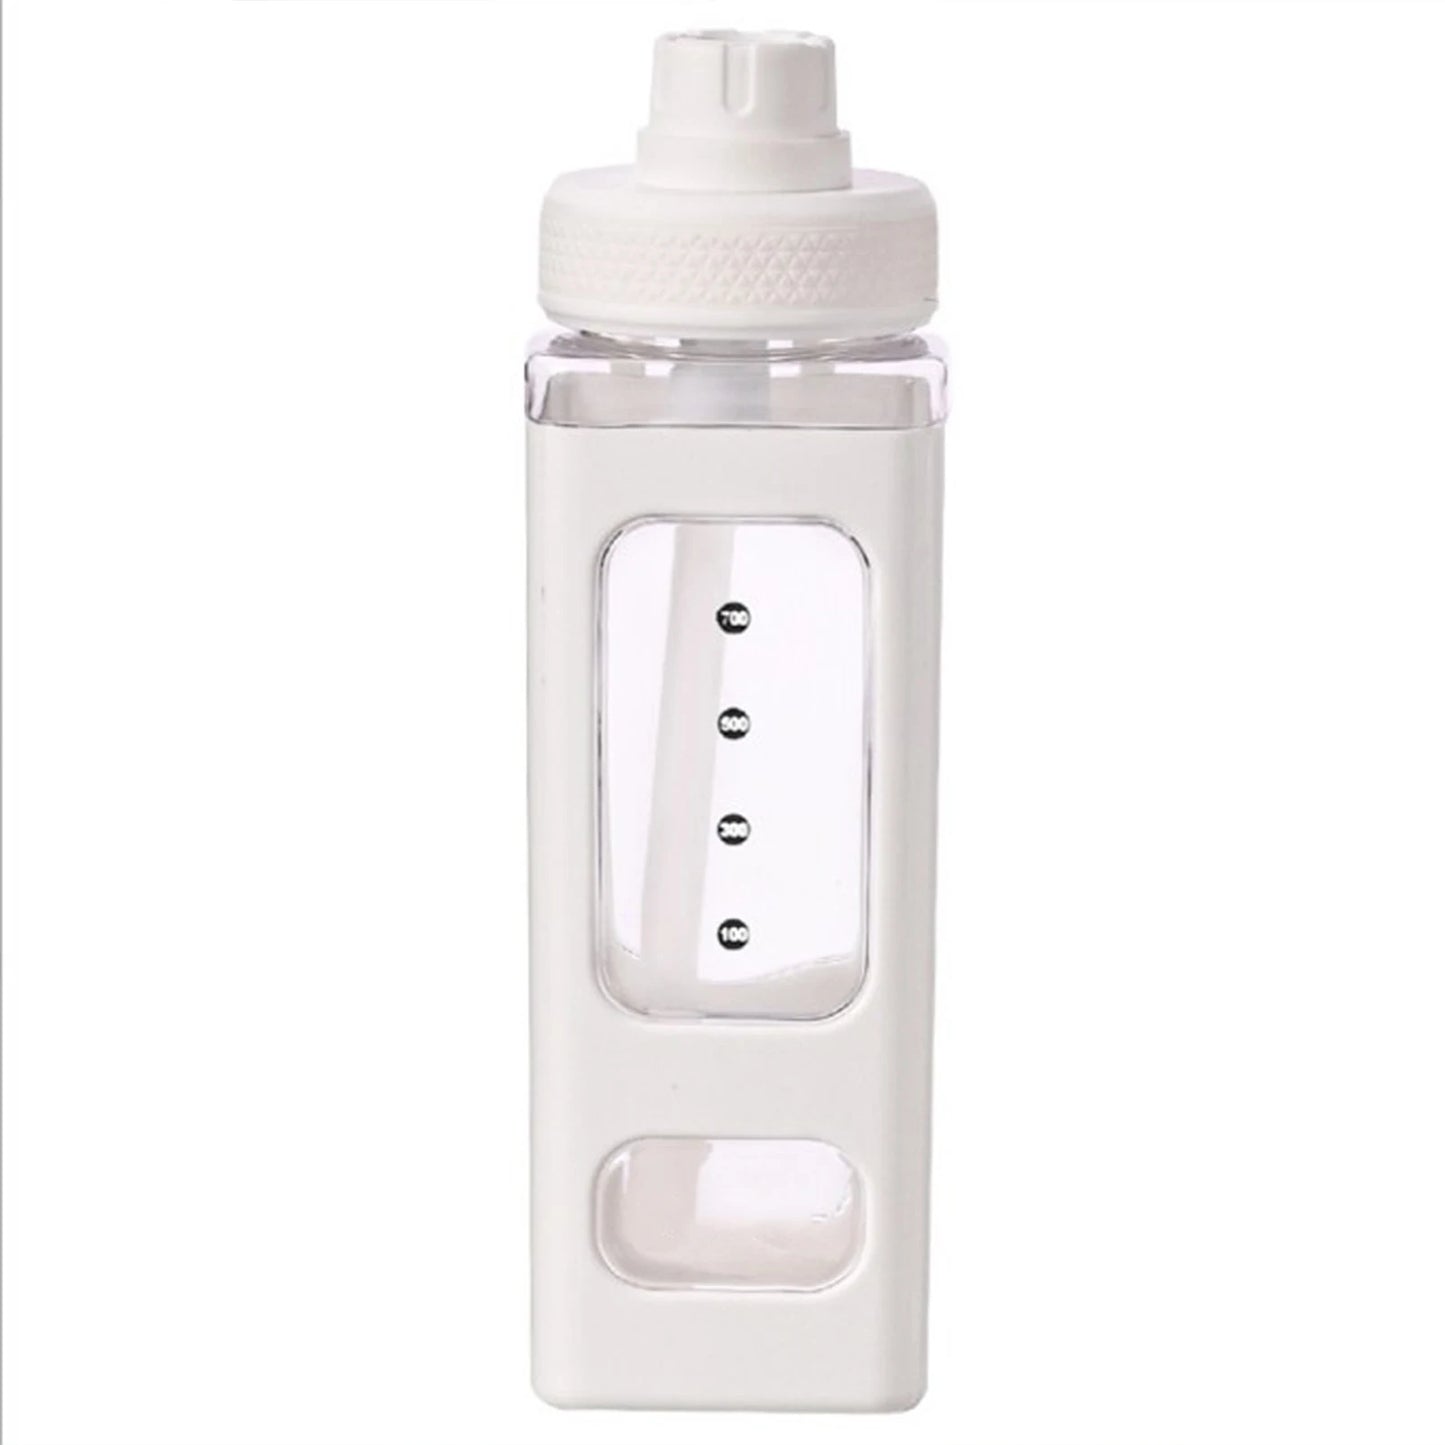 NAVY - Botella de agua con diseño cuadrado de 700ml, con pajita y correa.